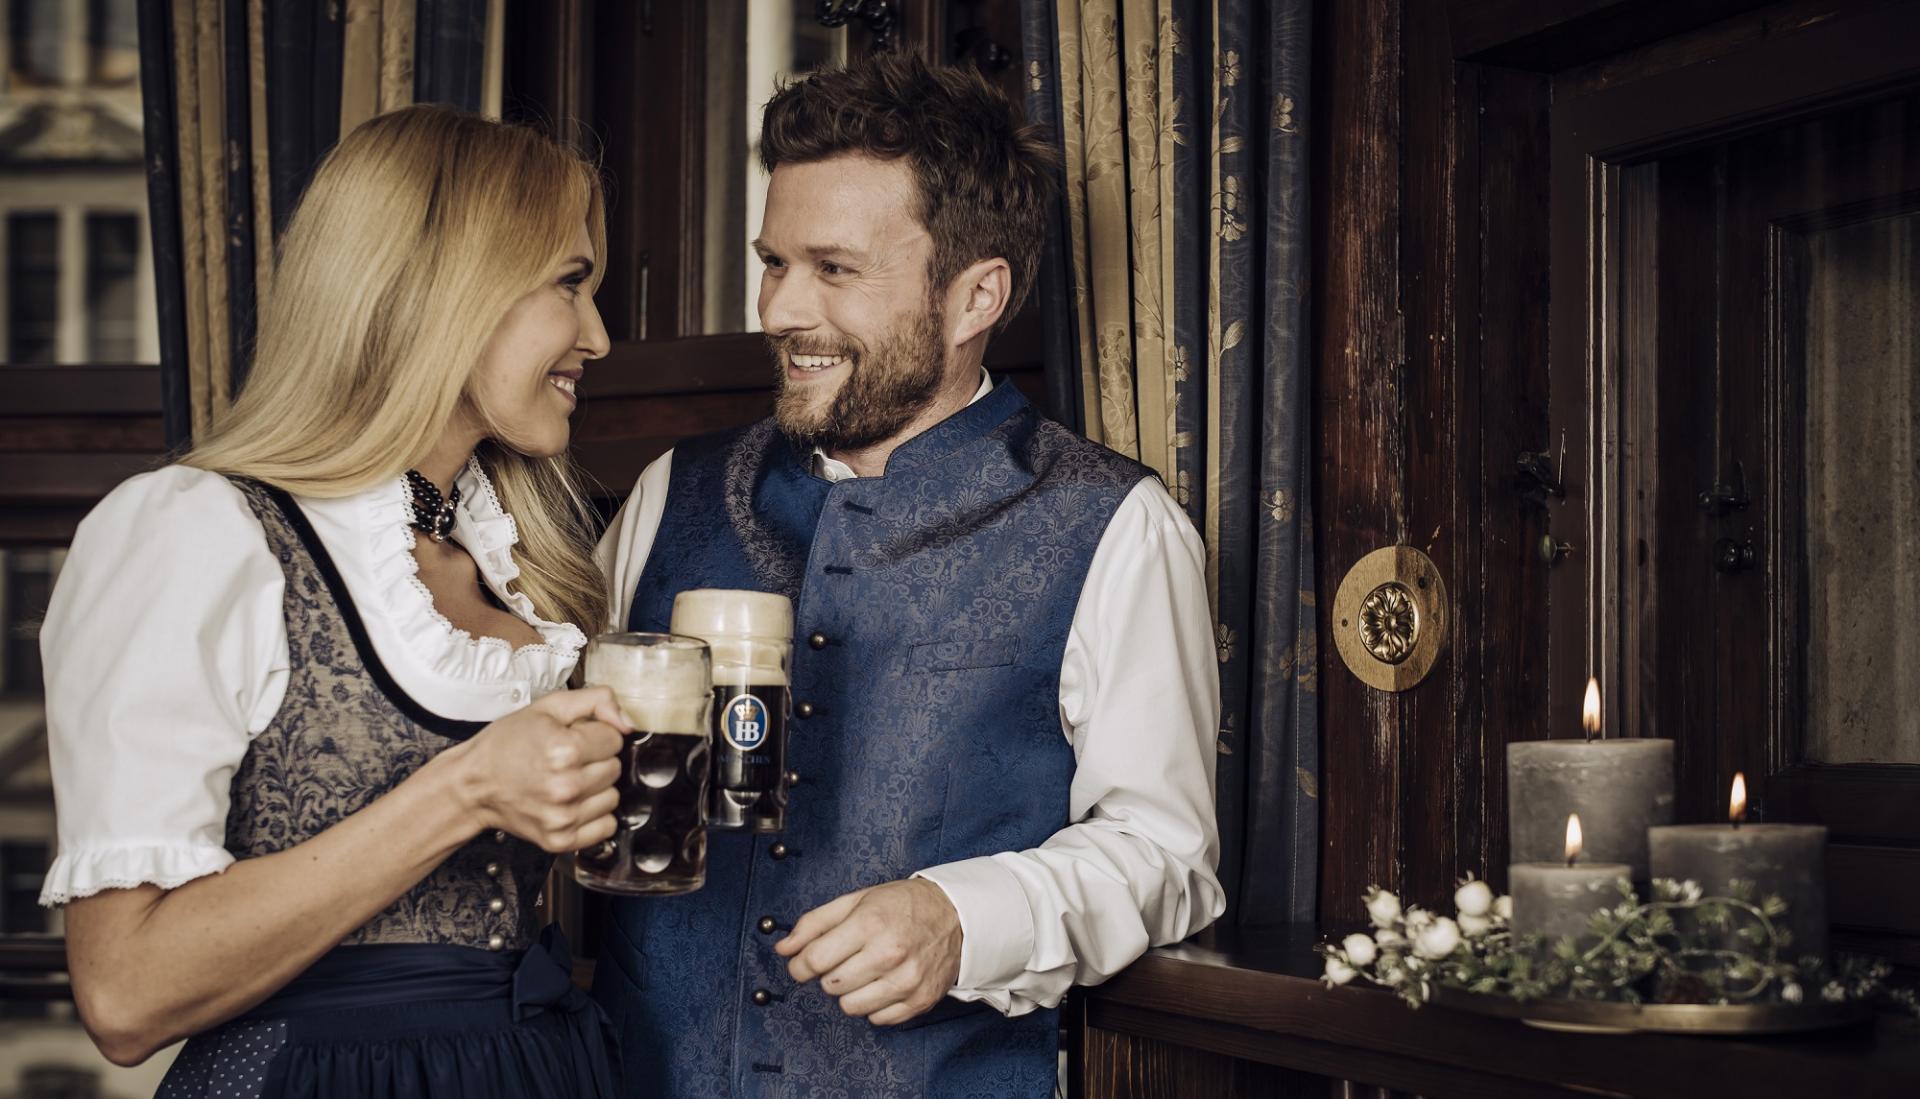 Die Biere von HB München - Was für ein Genuss